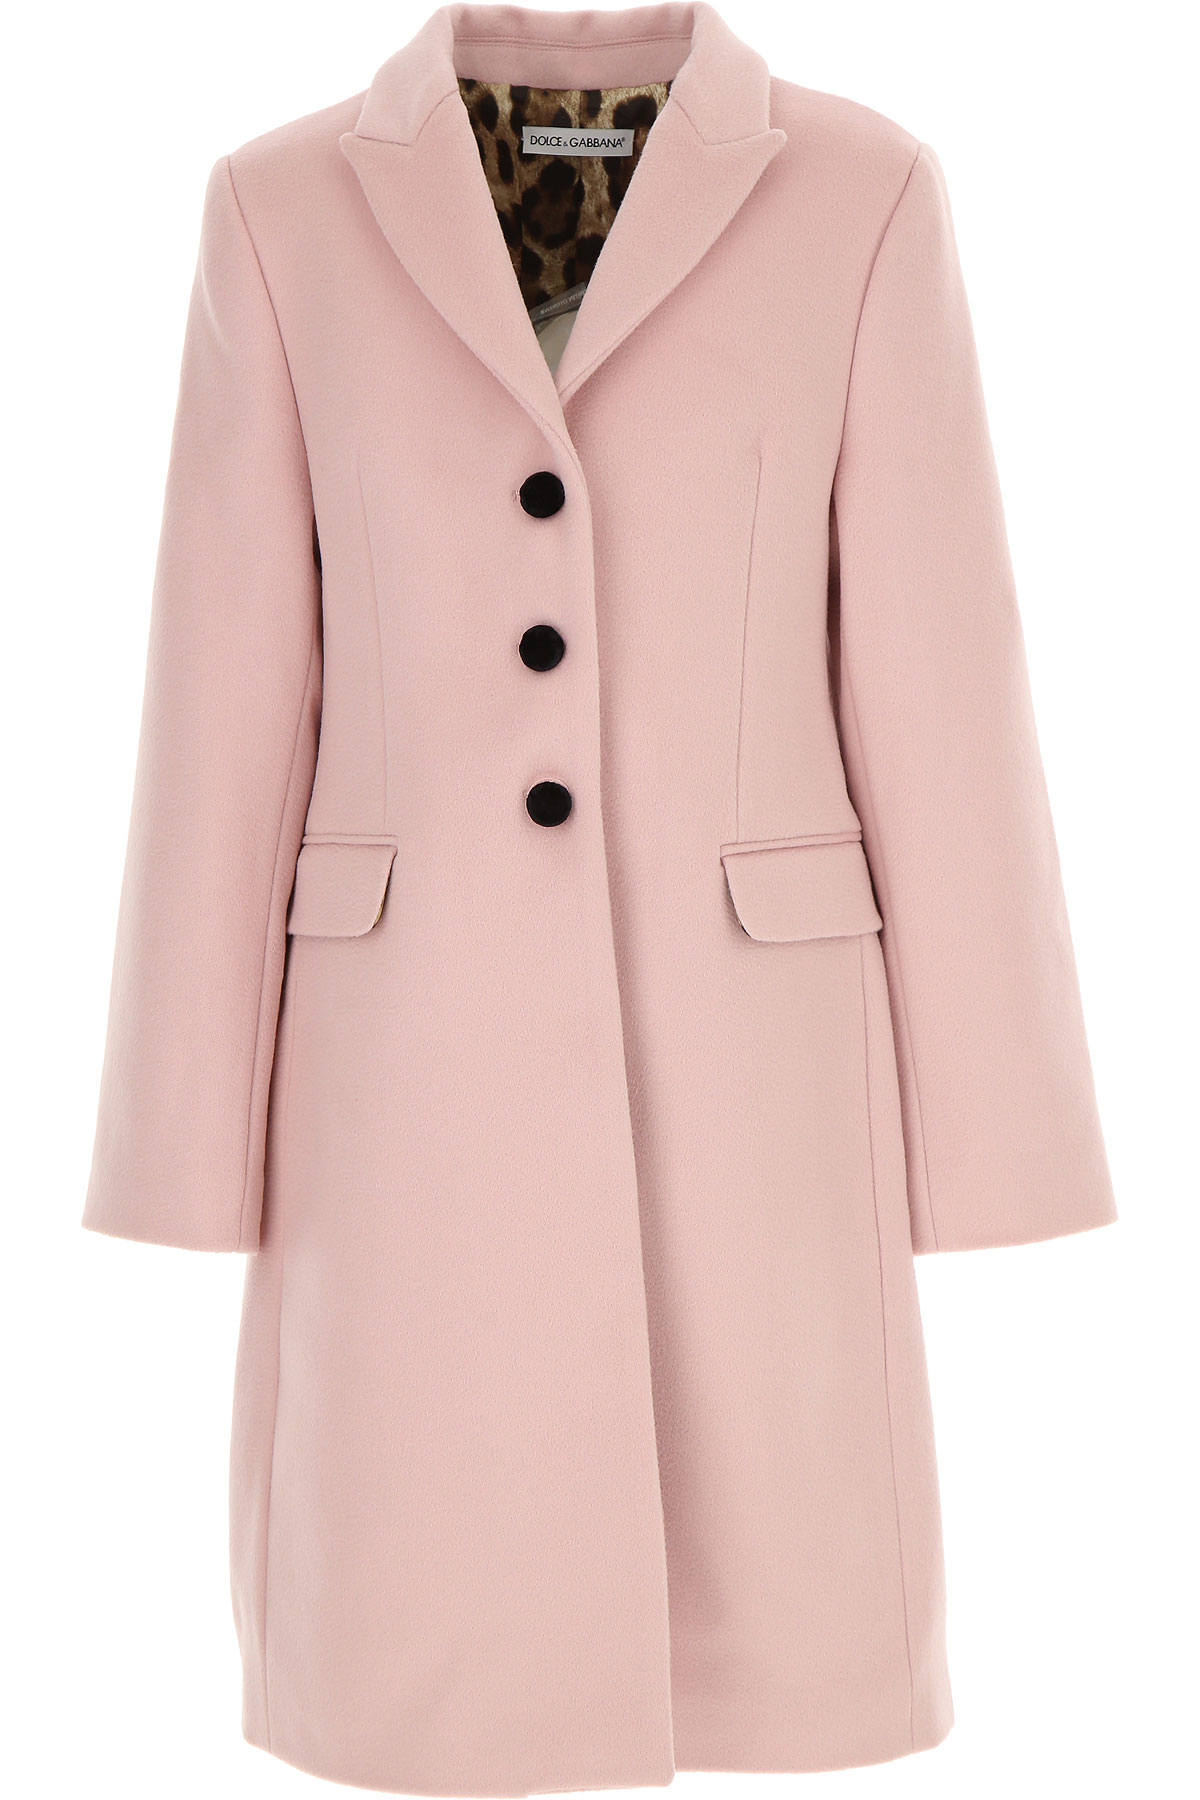 Пальто dolce. Dolce Gabbana пальто розовое. Пальто розовое Дольче Габбана. Пальто Дольче для девочки. Розовое пальто малышу.